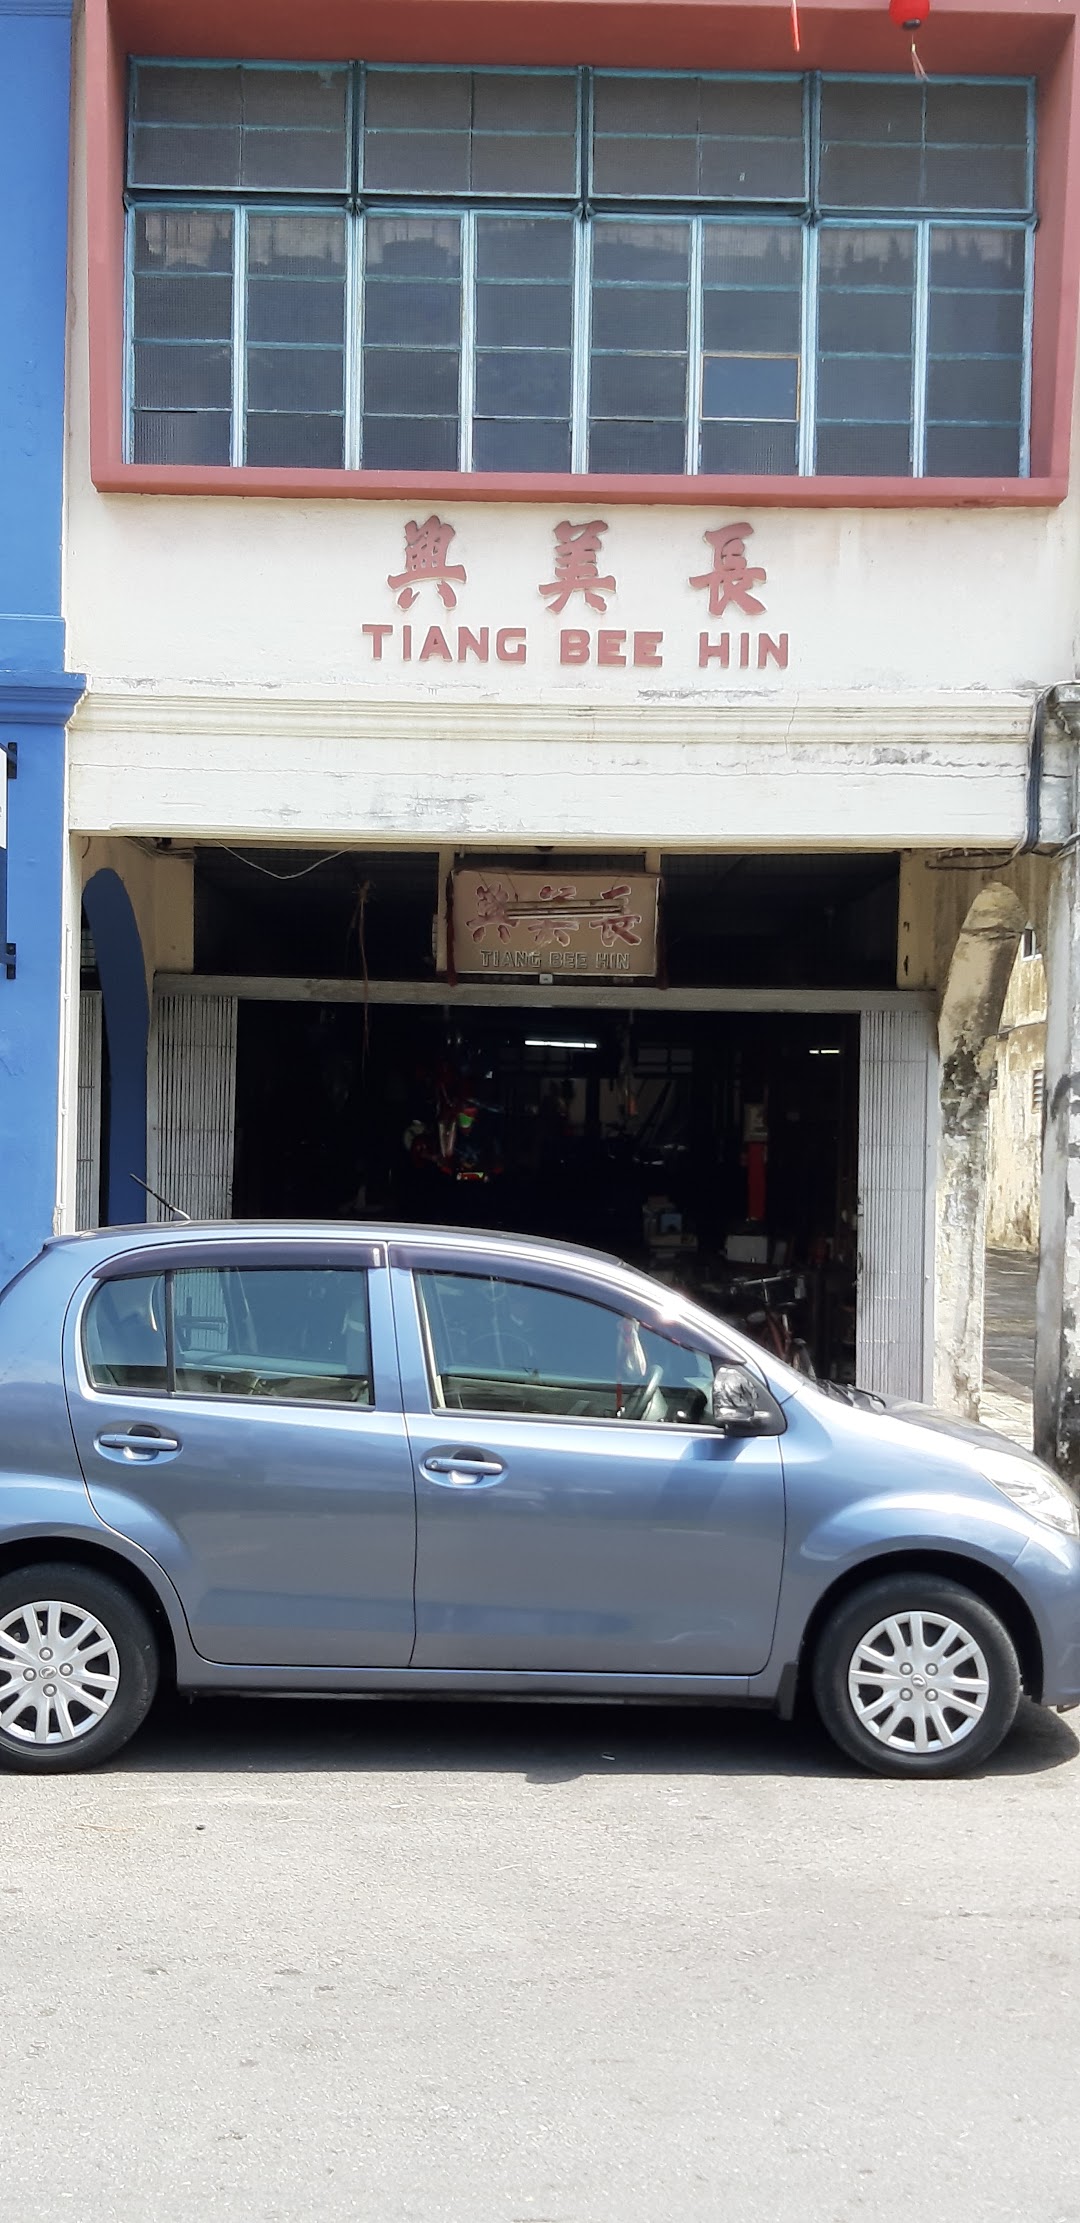 Tiang Bee Hin